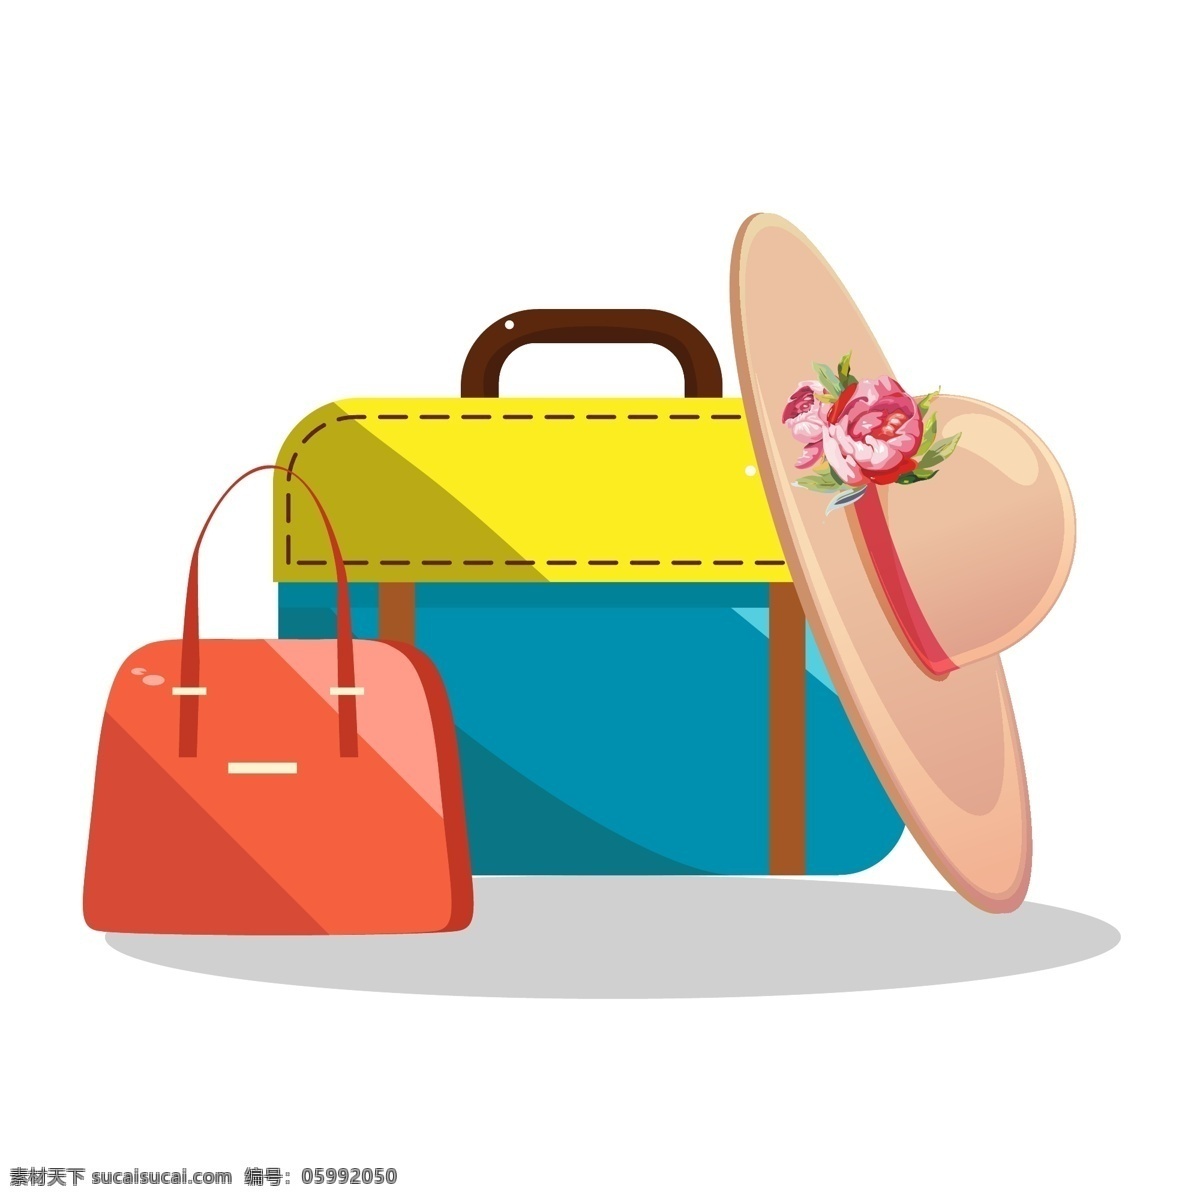 夏日 度假 行李 插画 夏日度假 夏季旅游 旅行 女士包 出差 女士行李 红色手提包 蓝黑色 行李包 米色的遮阳帽 带花帽子